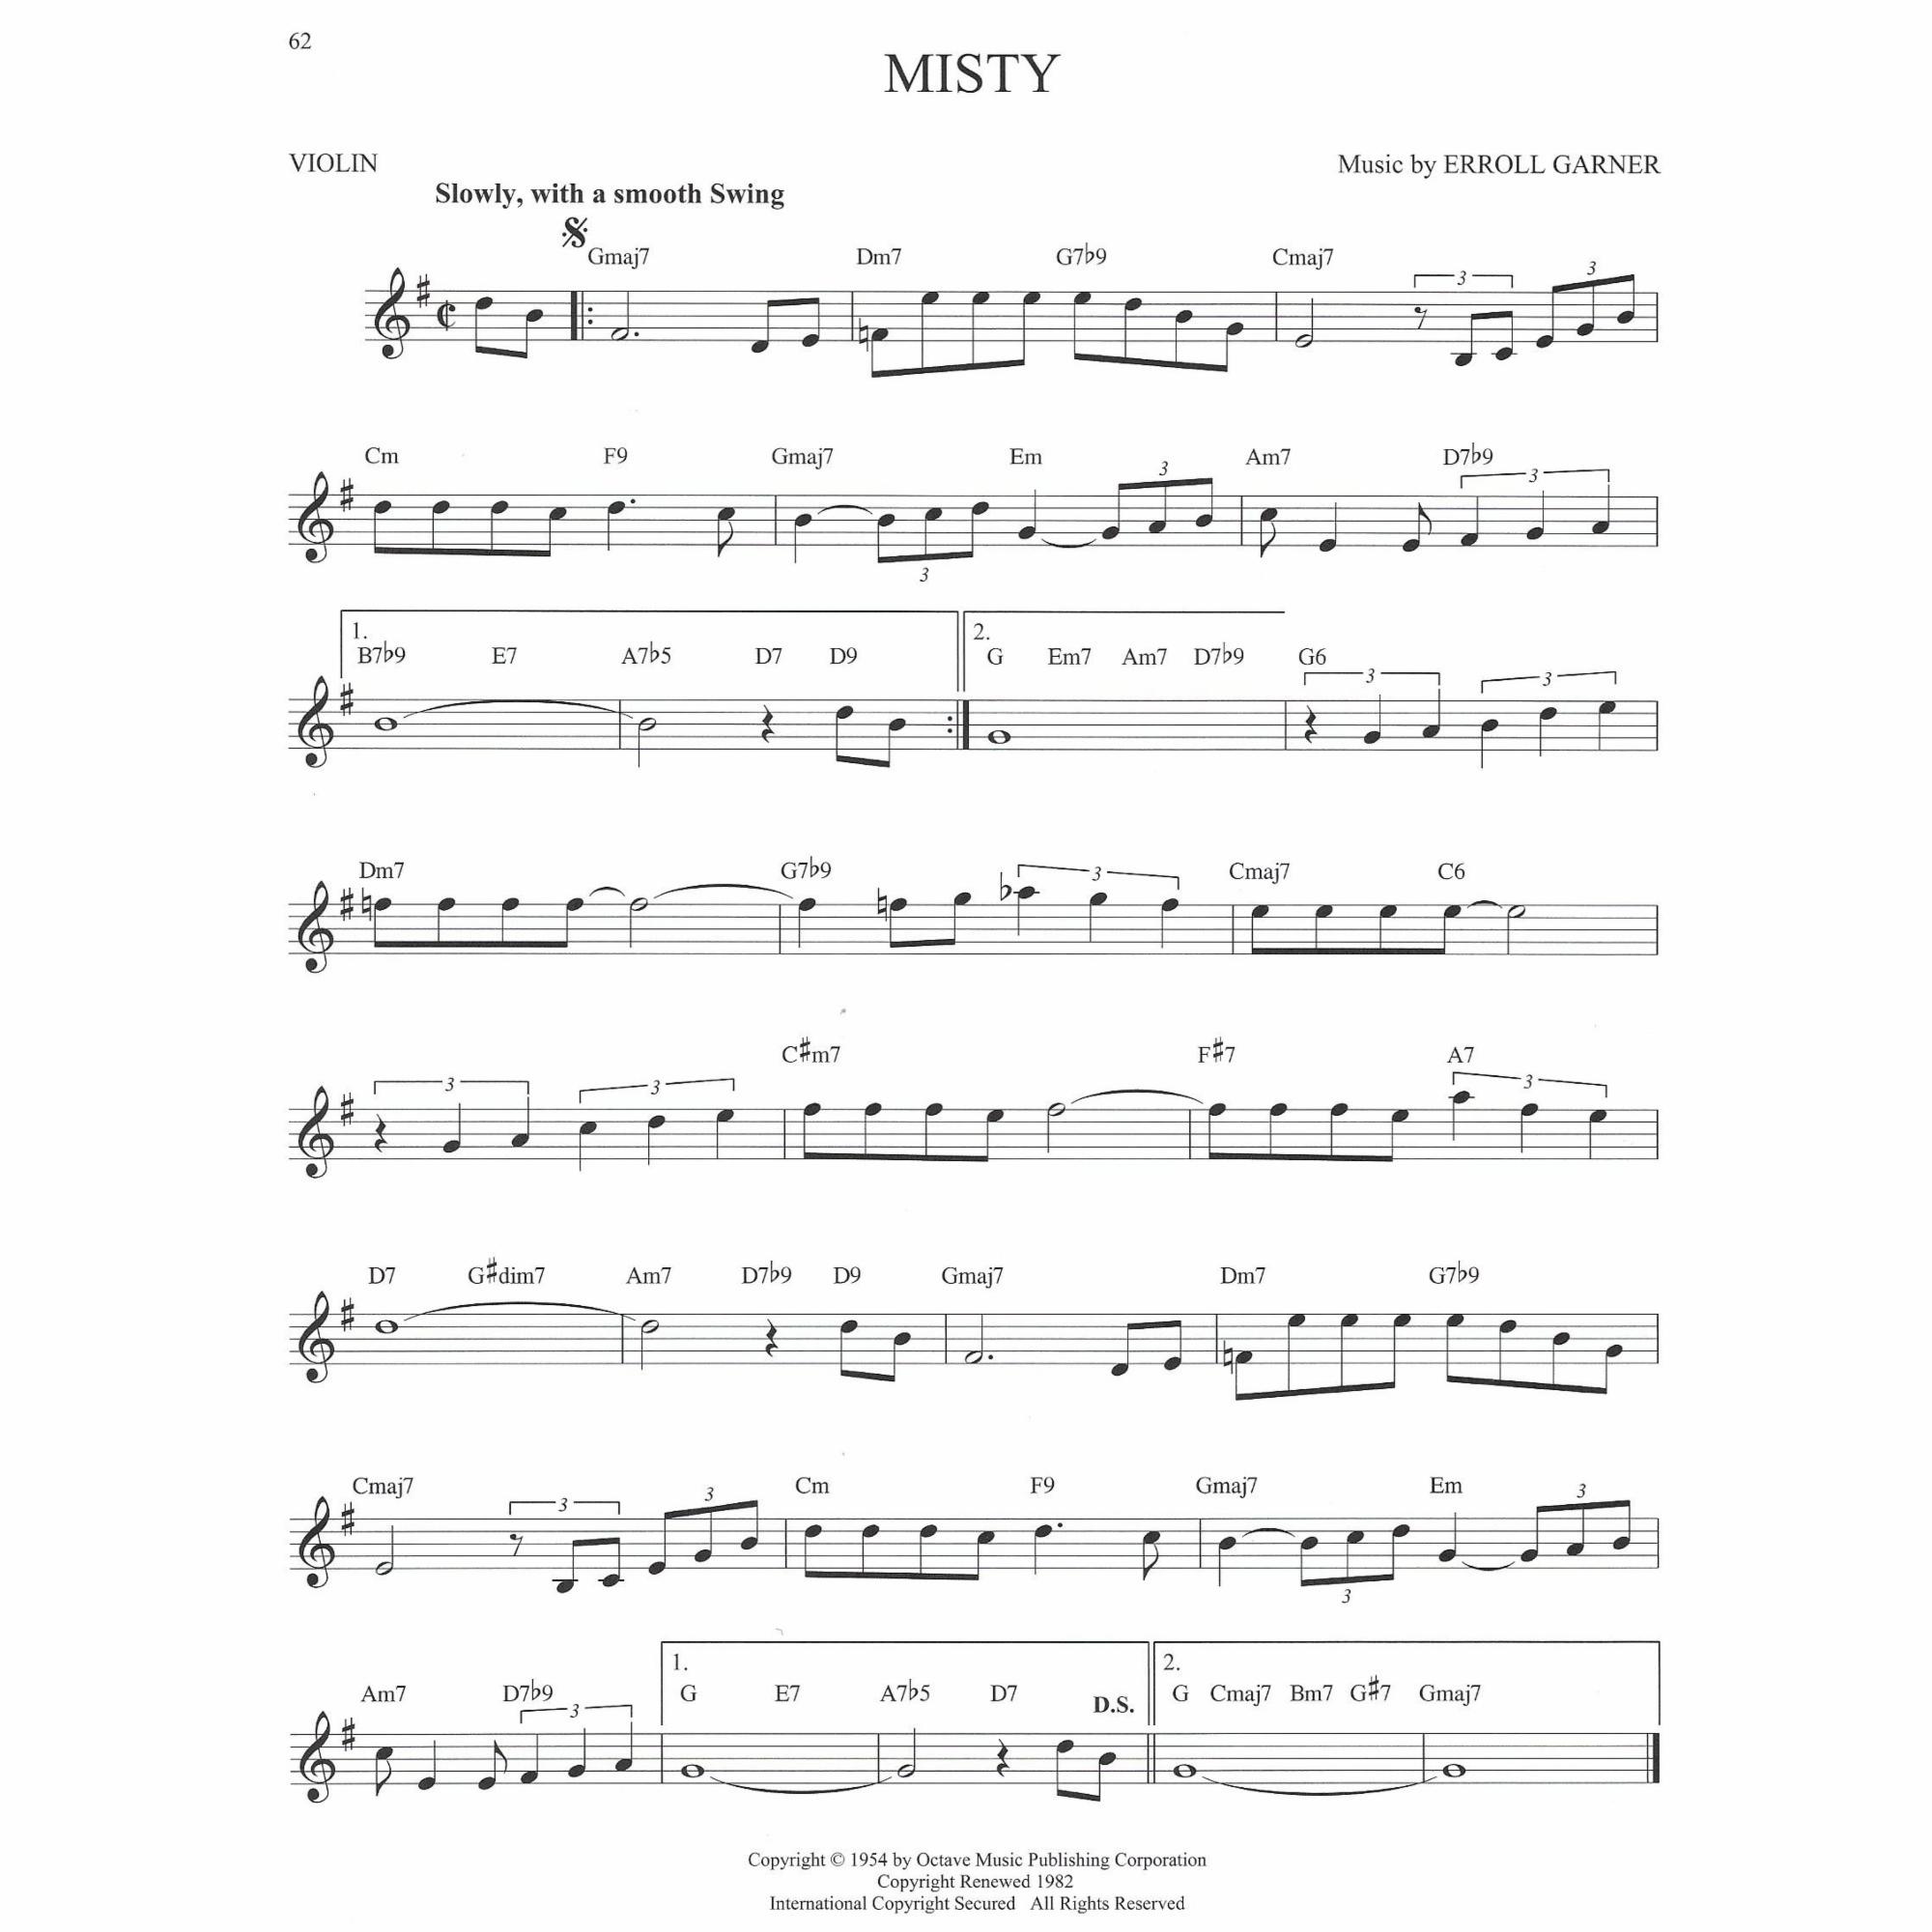 Sample: Violin (Pg. 62)